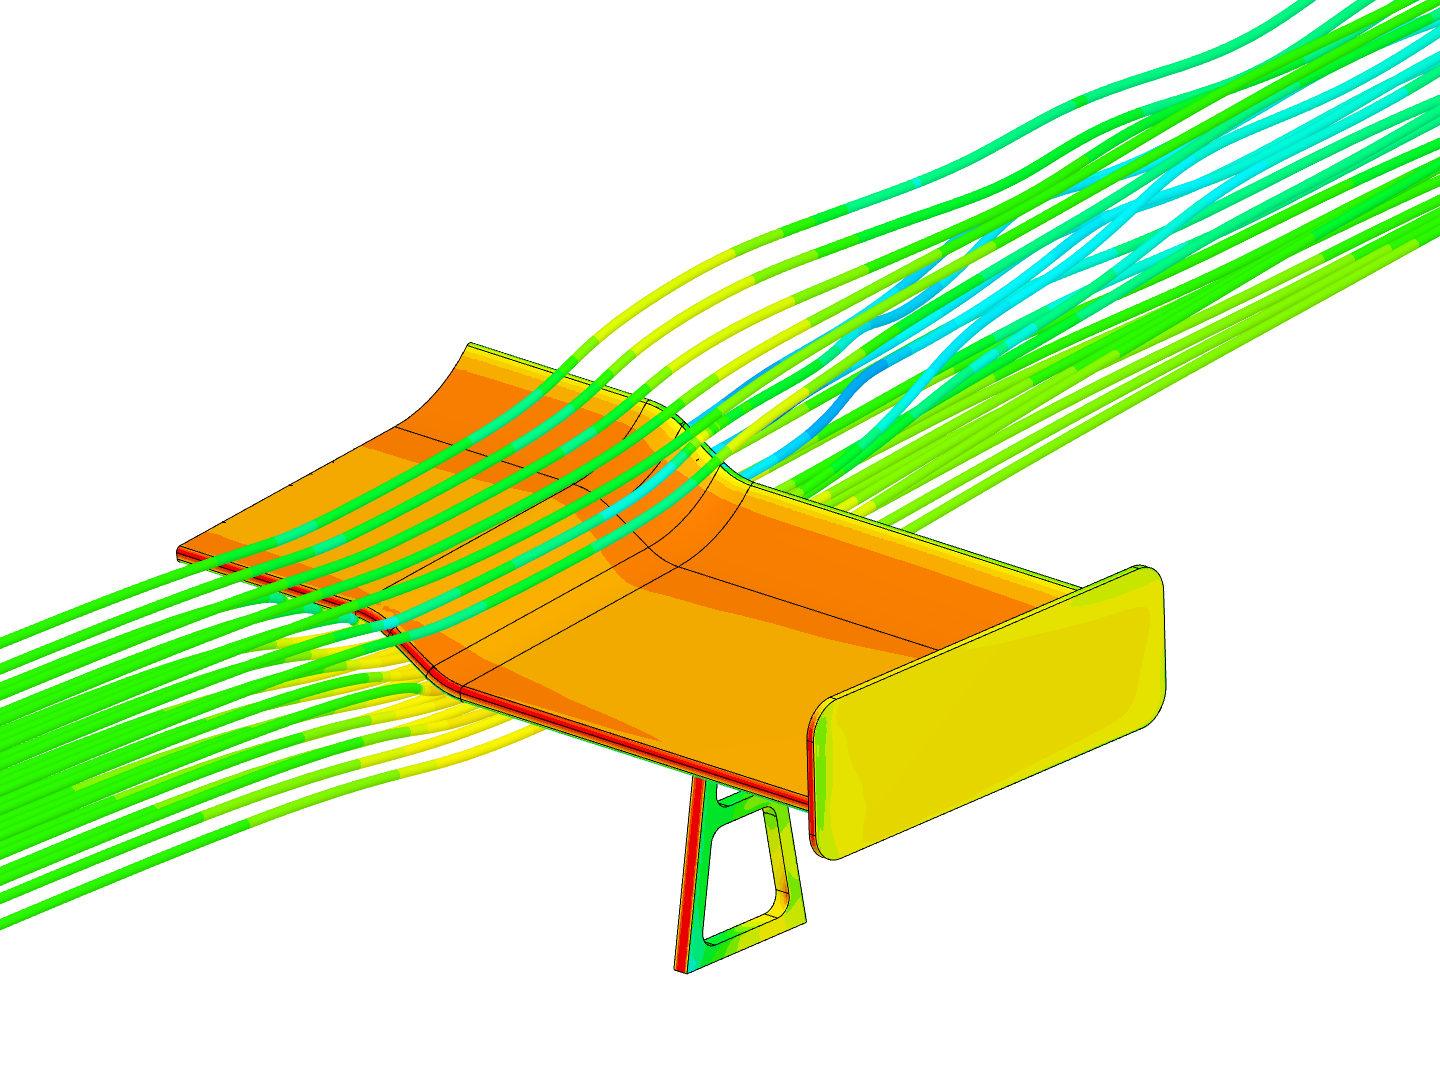 GT Rear Wing Aero image